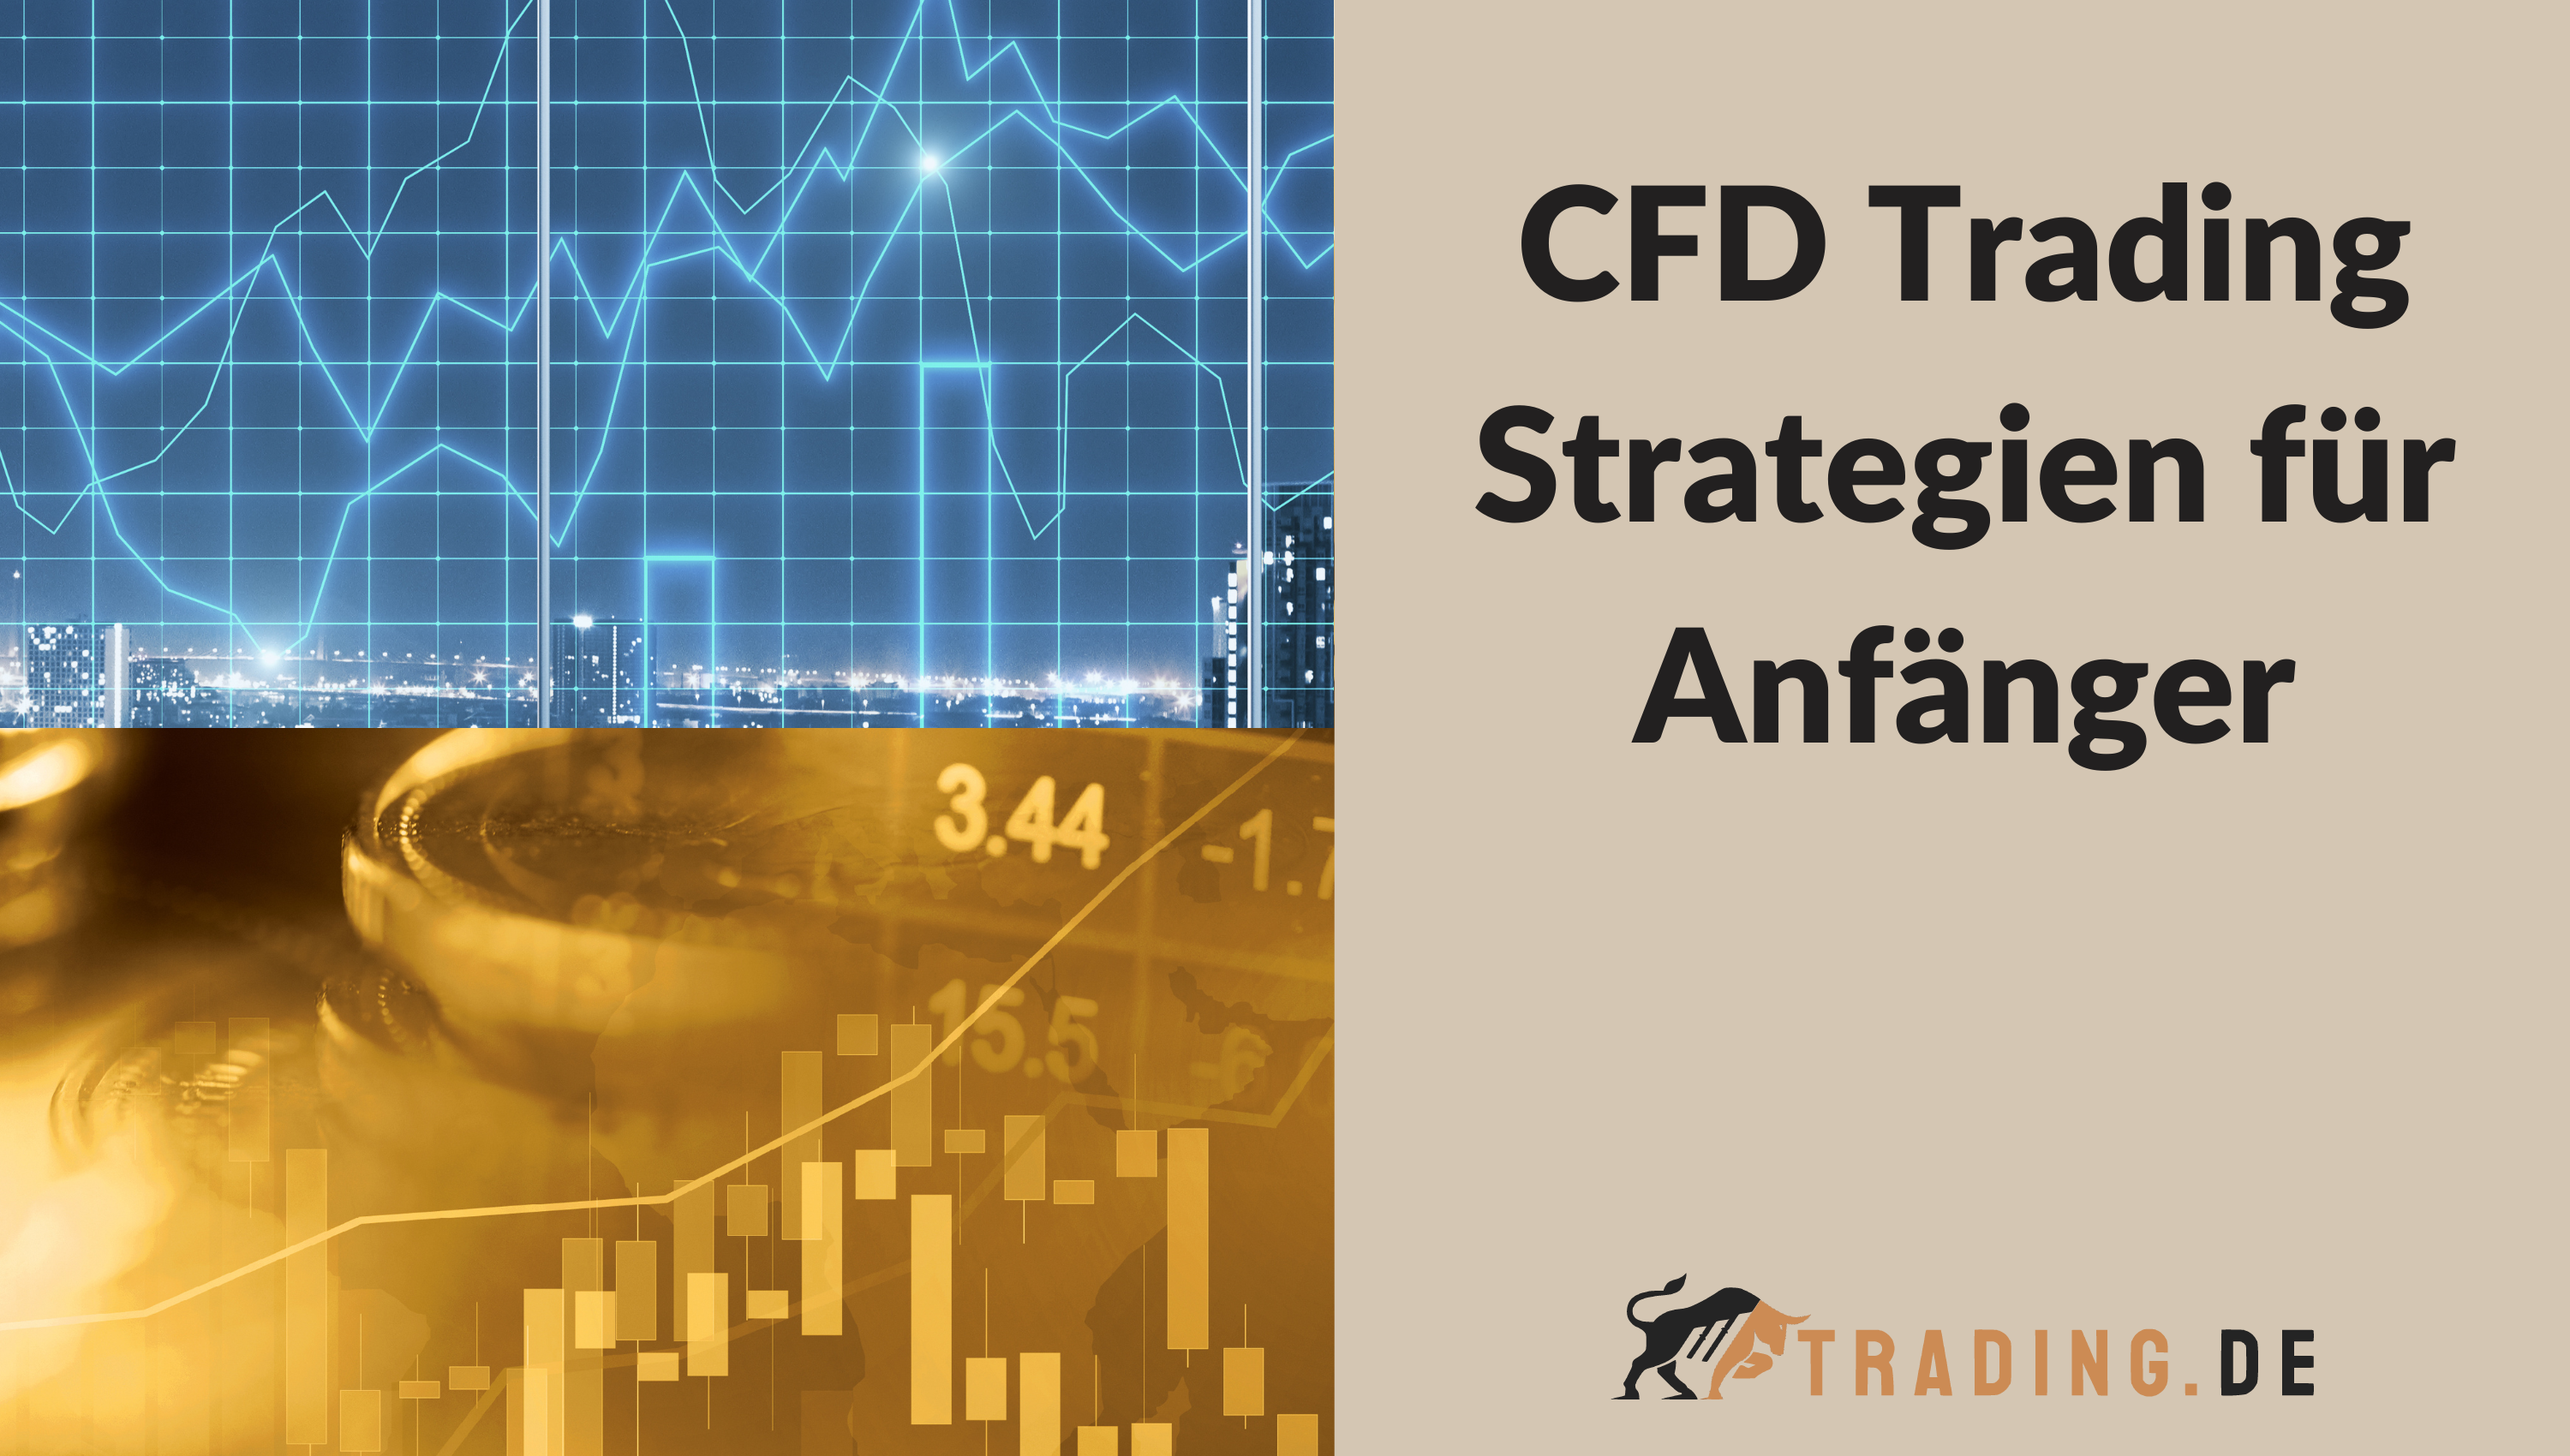 CFD Trading Strategien für Anfänger